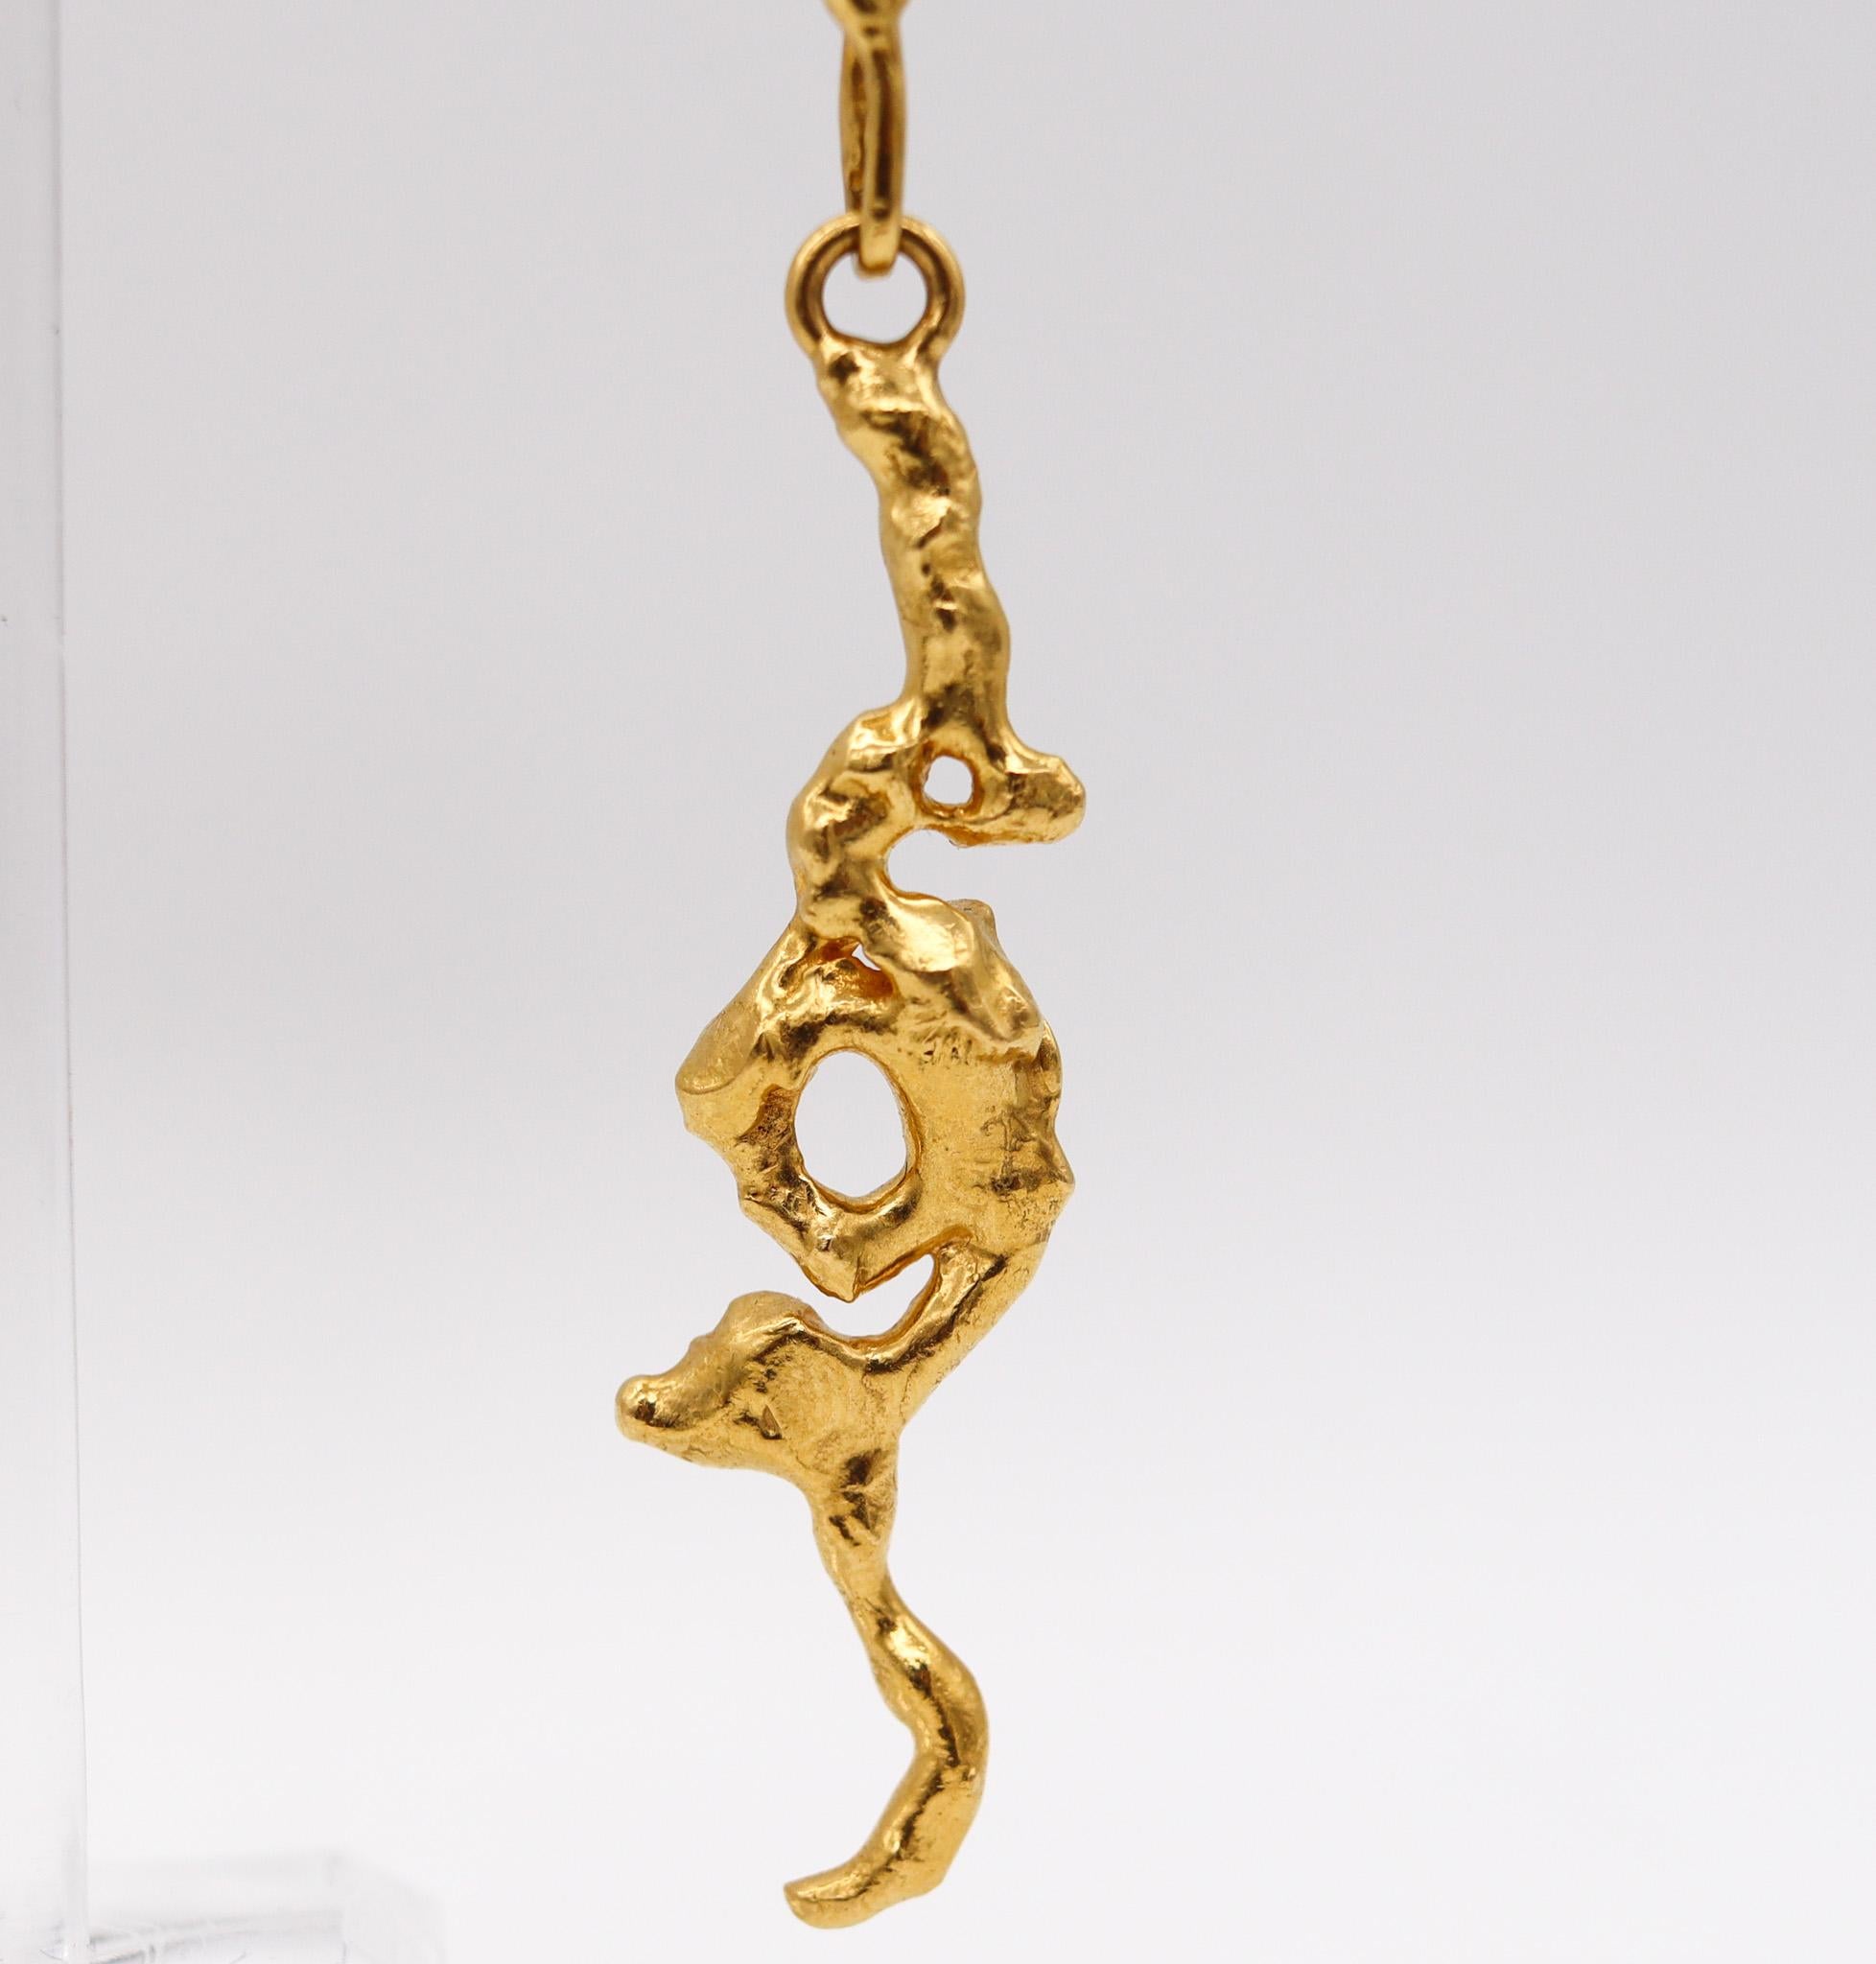 Freie Formen Cabrio-Ohrringe, entworfen von Jean Mahie.

Ein wunderschönes tragbares Kunstwerk, das der Künstler und Goldschmied Jean Mahie in den späten 1970er Jahren in Paris geschaffen hat. Dieses Paar skulpturaler Tropfenohrringe ist aus der